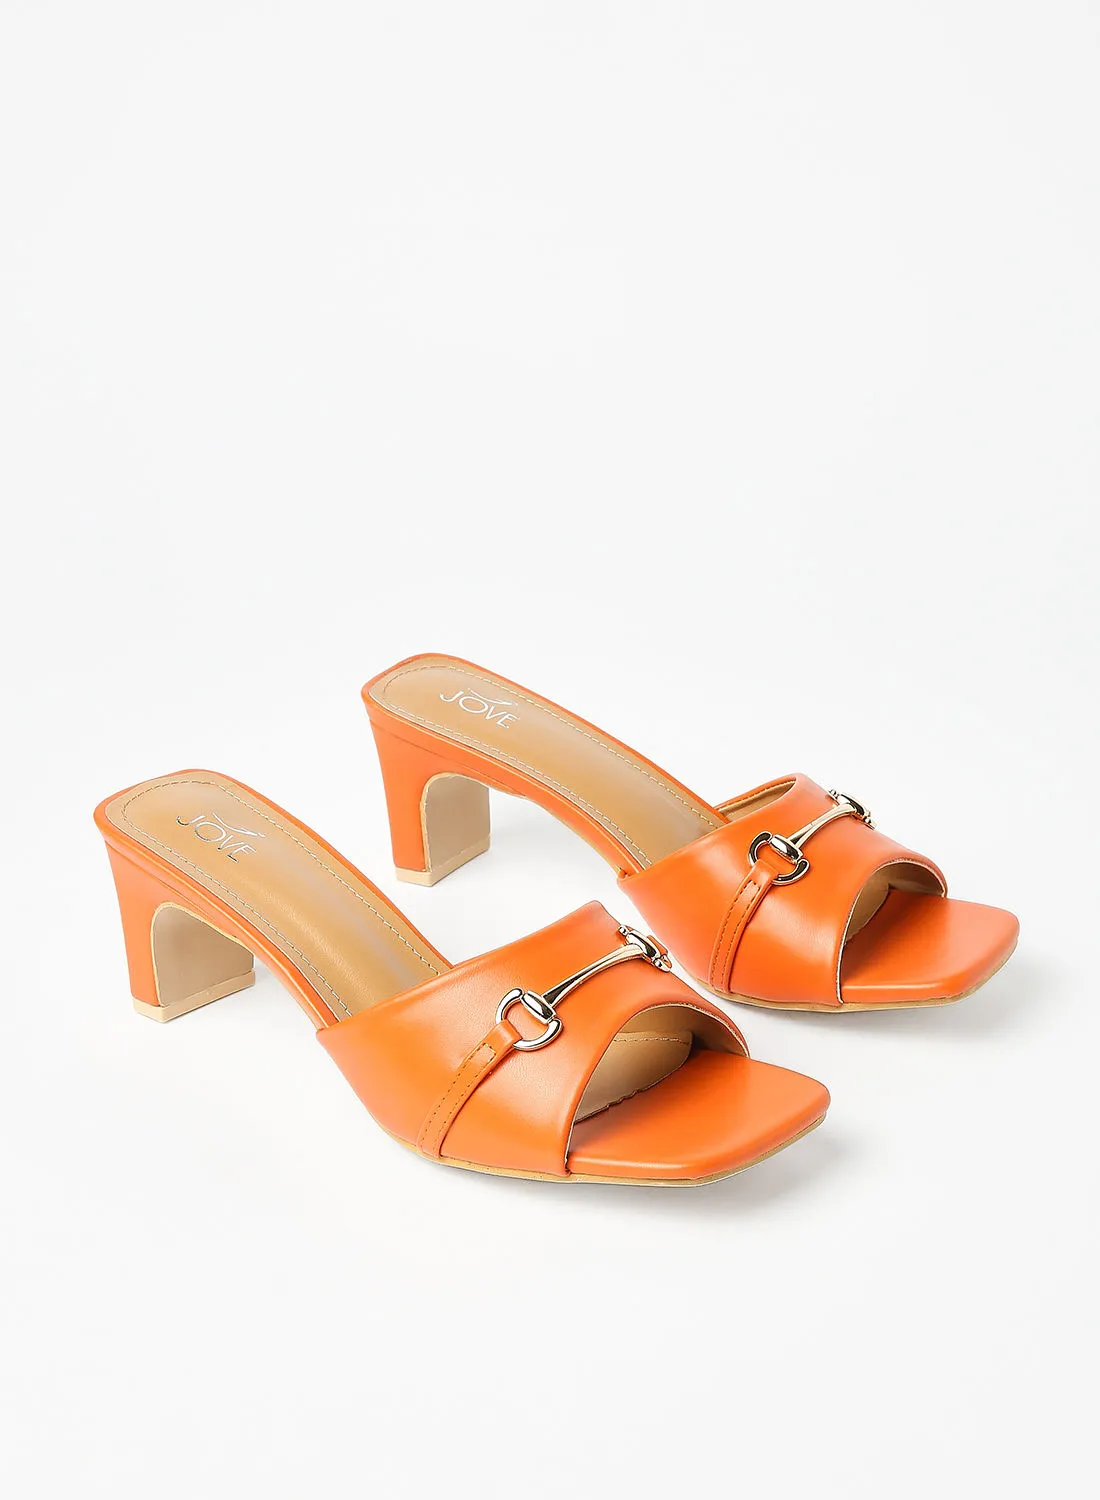 Jove Stylish Elegant Heeled Sandals Orange